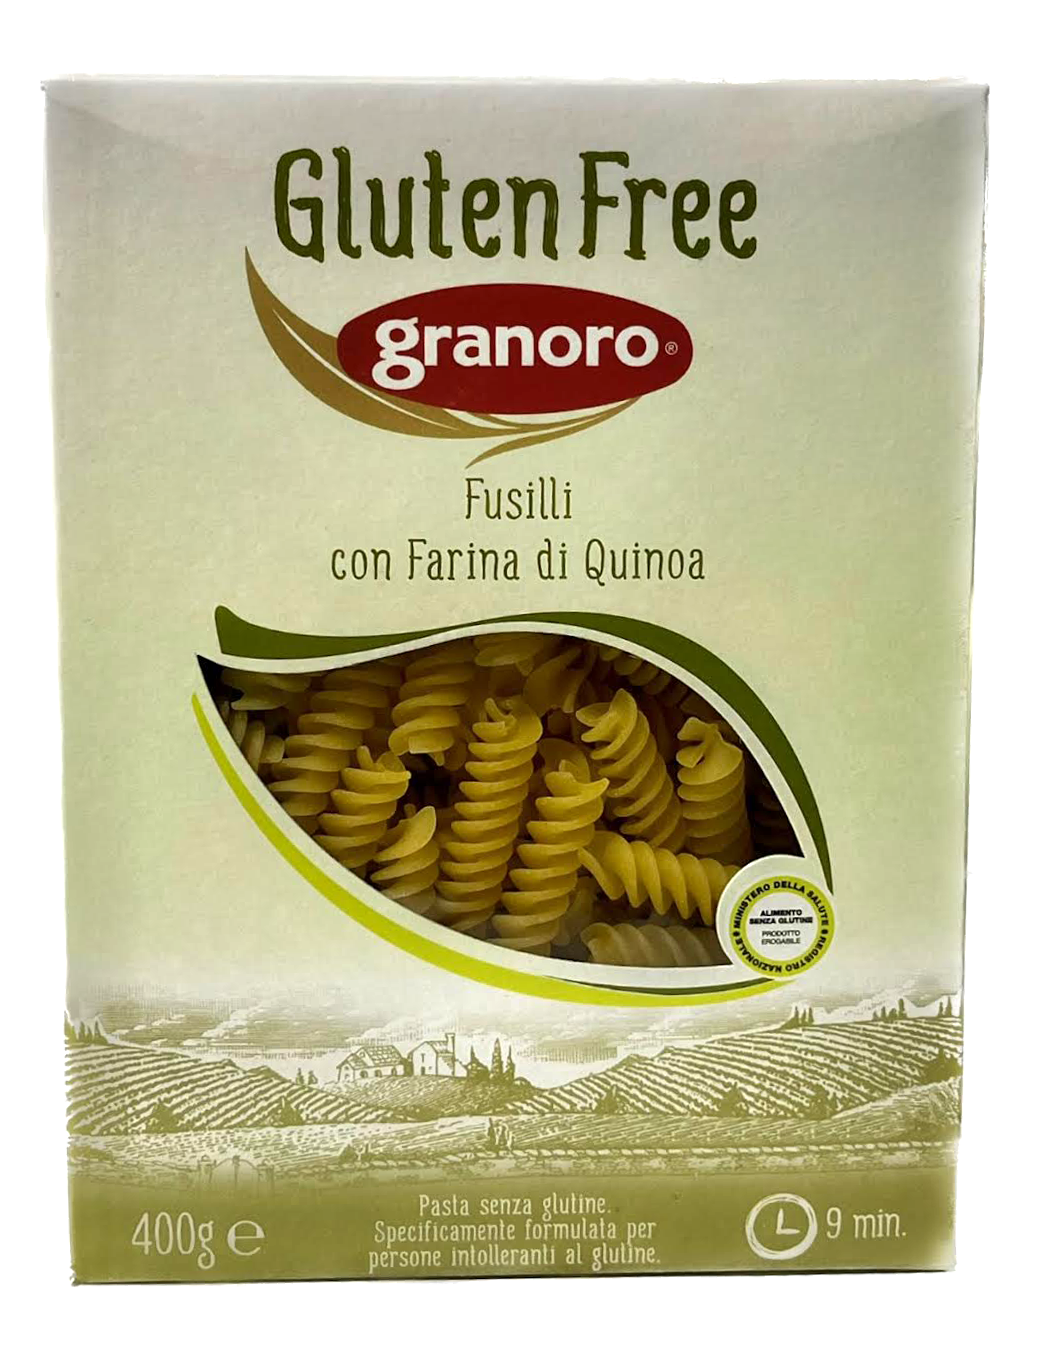 GRANORO GLUTEN FREE QUINOA FUSILLI - PRODUCT OF ITALY - 3 PACK